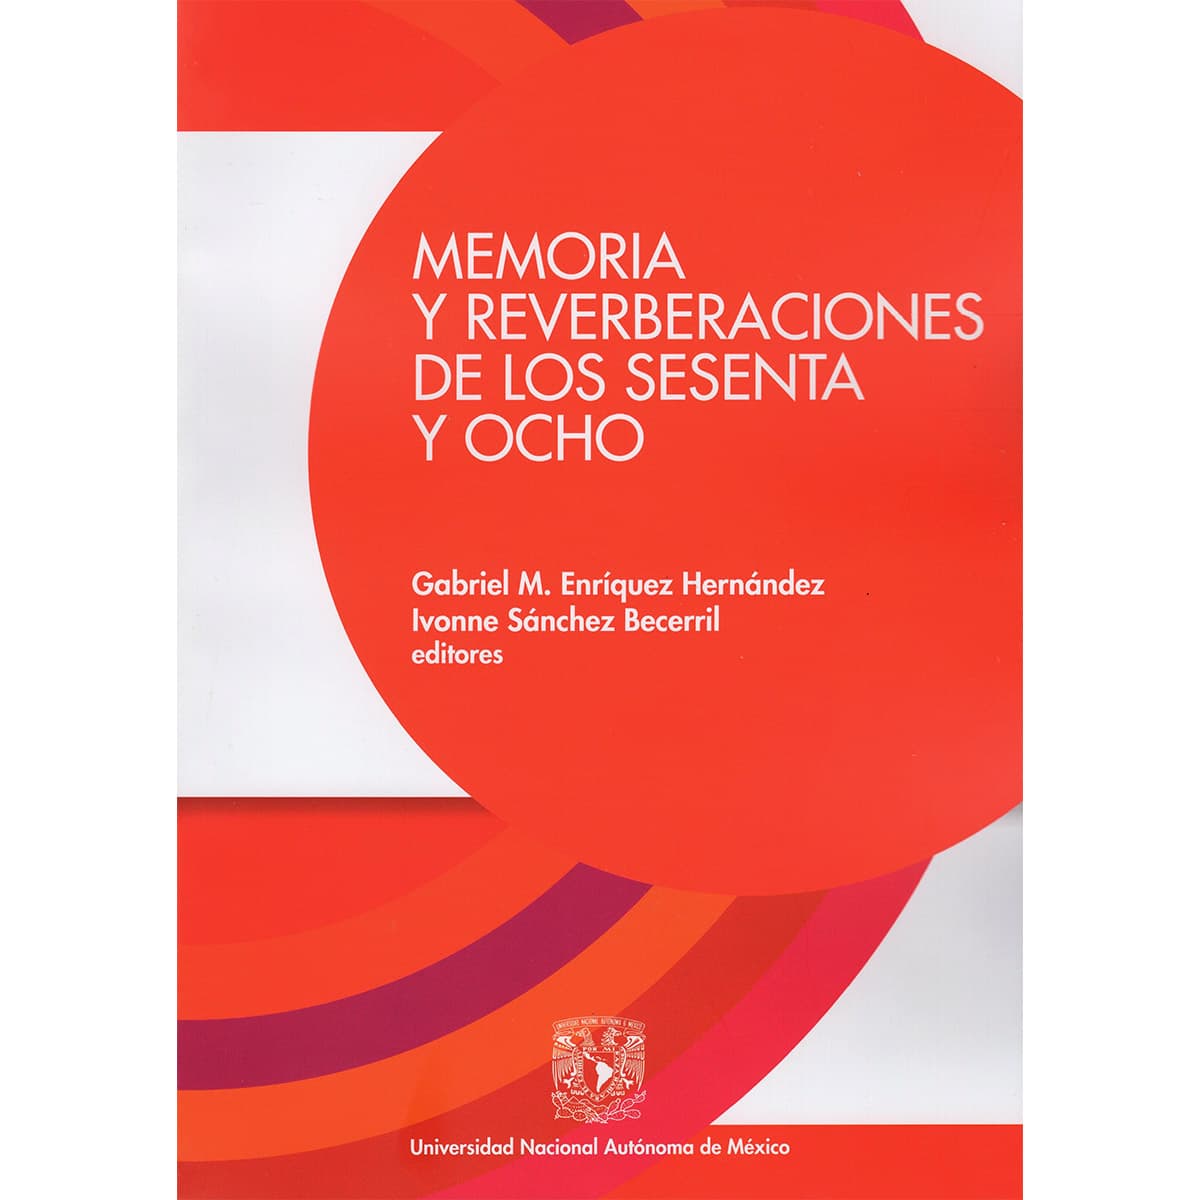 MEMORIA Y REVERBERACIONES DE LOS SESENTA Y OCHO